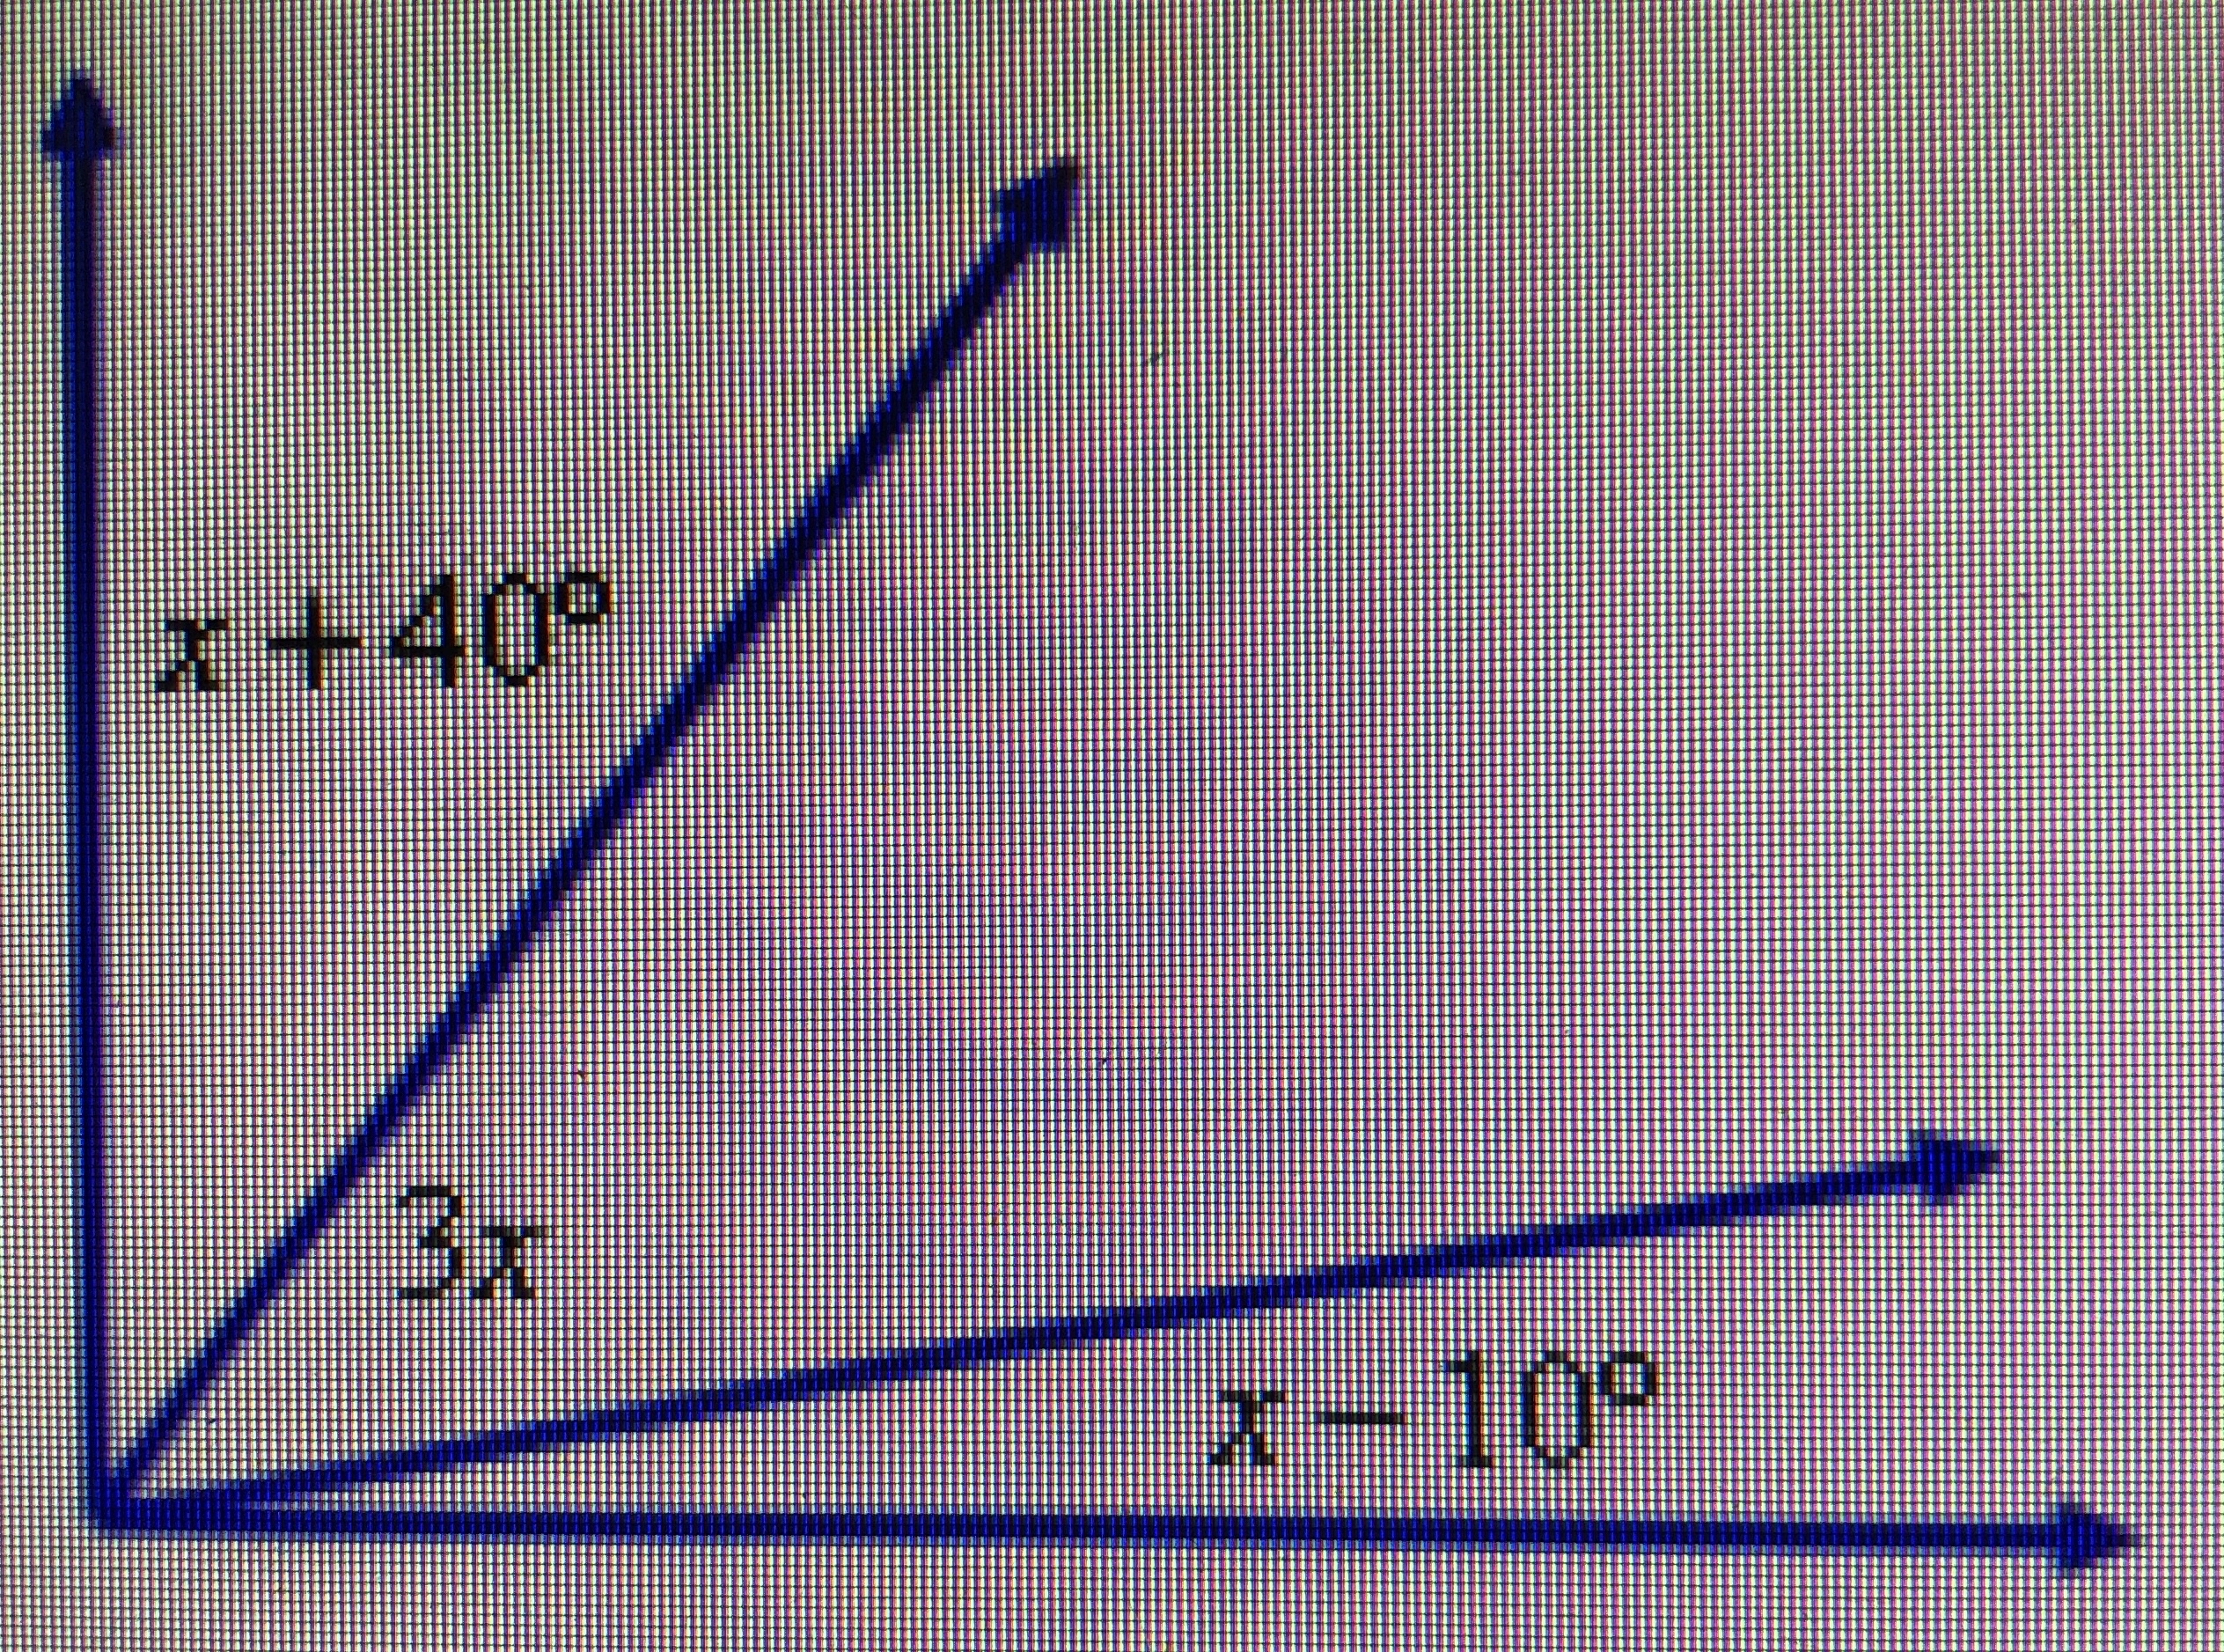 Calcule o valor de x na figura. (Dado que o ângulo total de figura é 90  graus) ? - Matemática